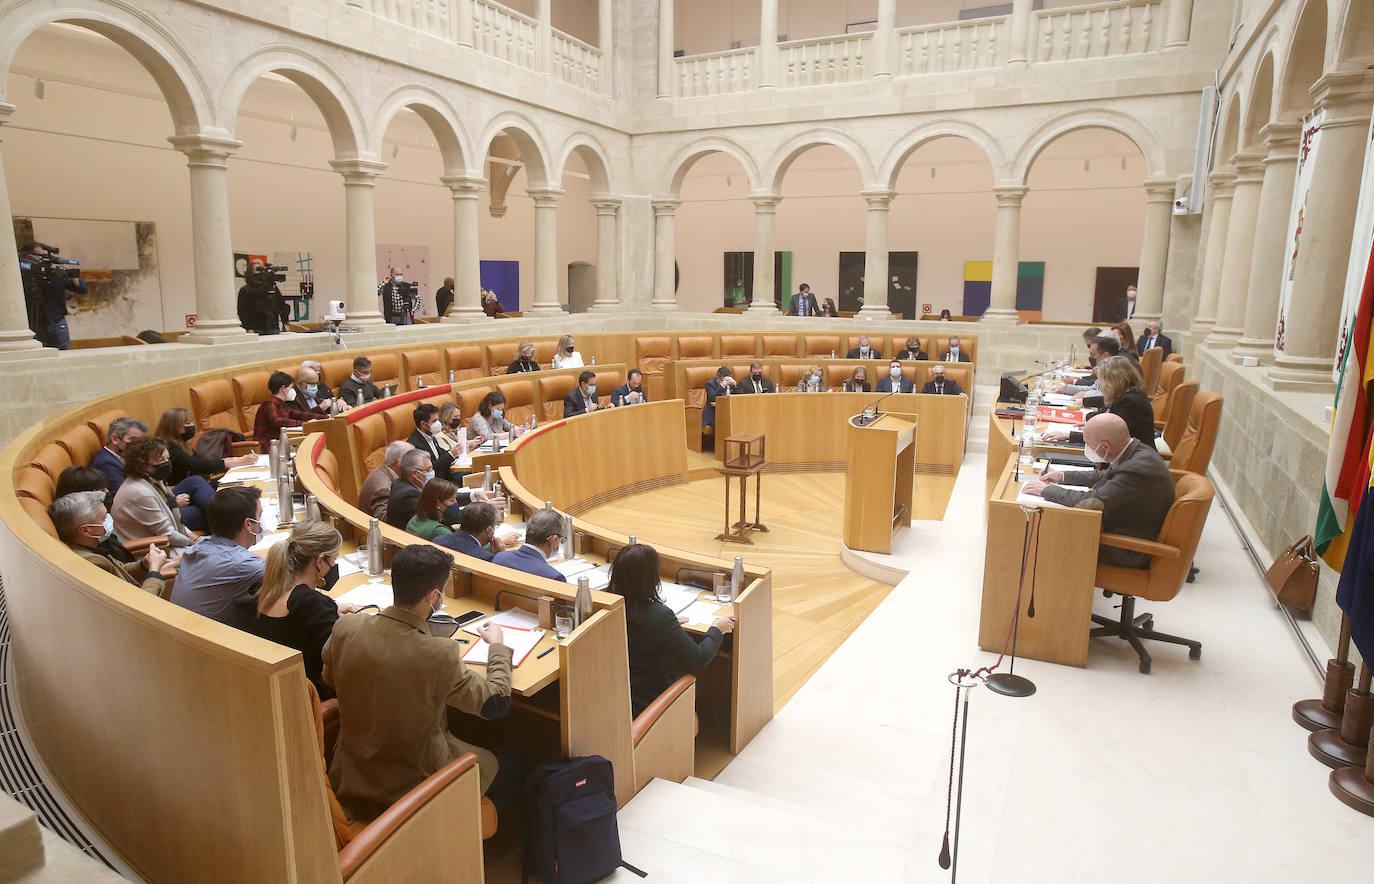 Imágenes de los diputados en la sesión de la cámara riojana del 11 de noviembre